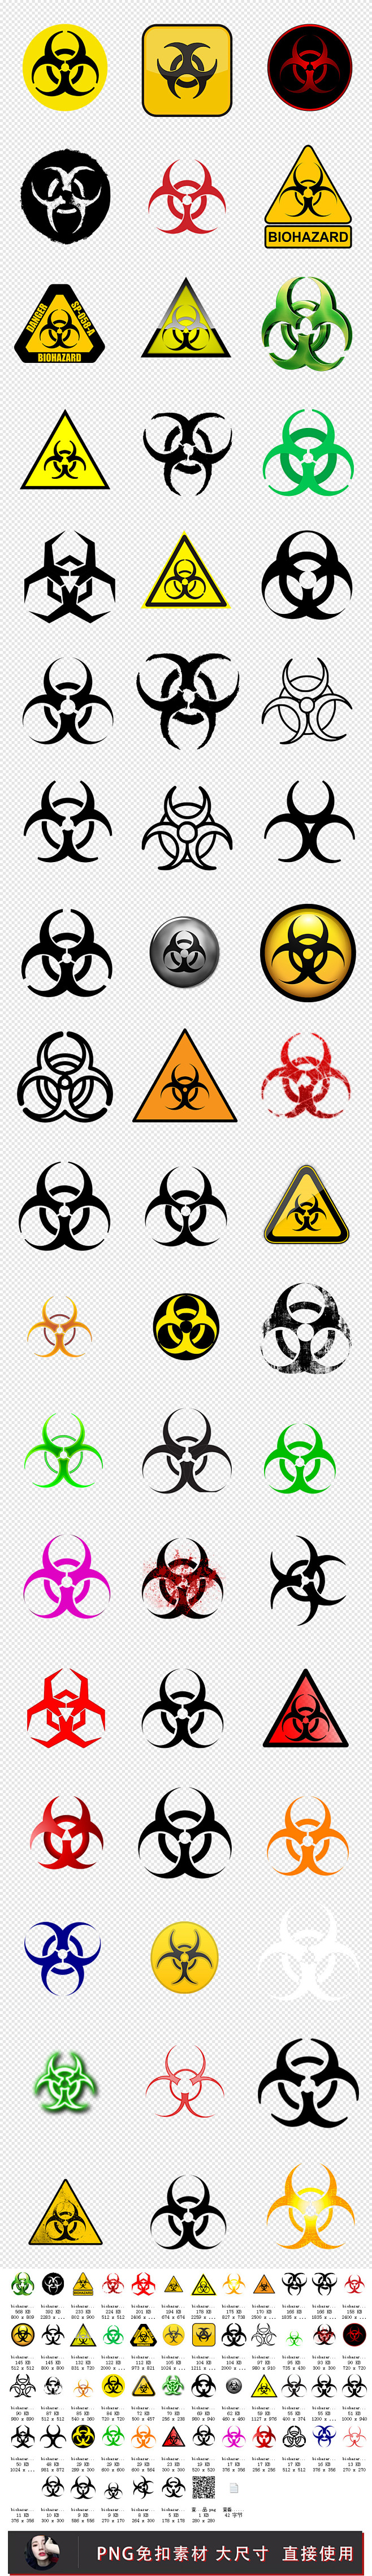 生化危机logo标志复制图片